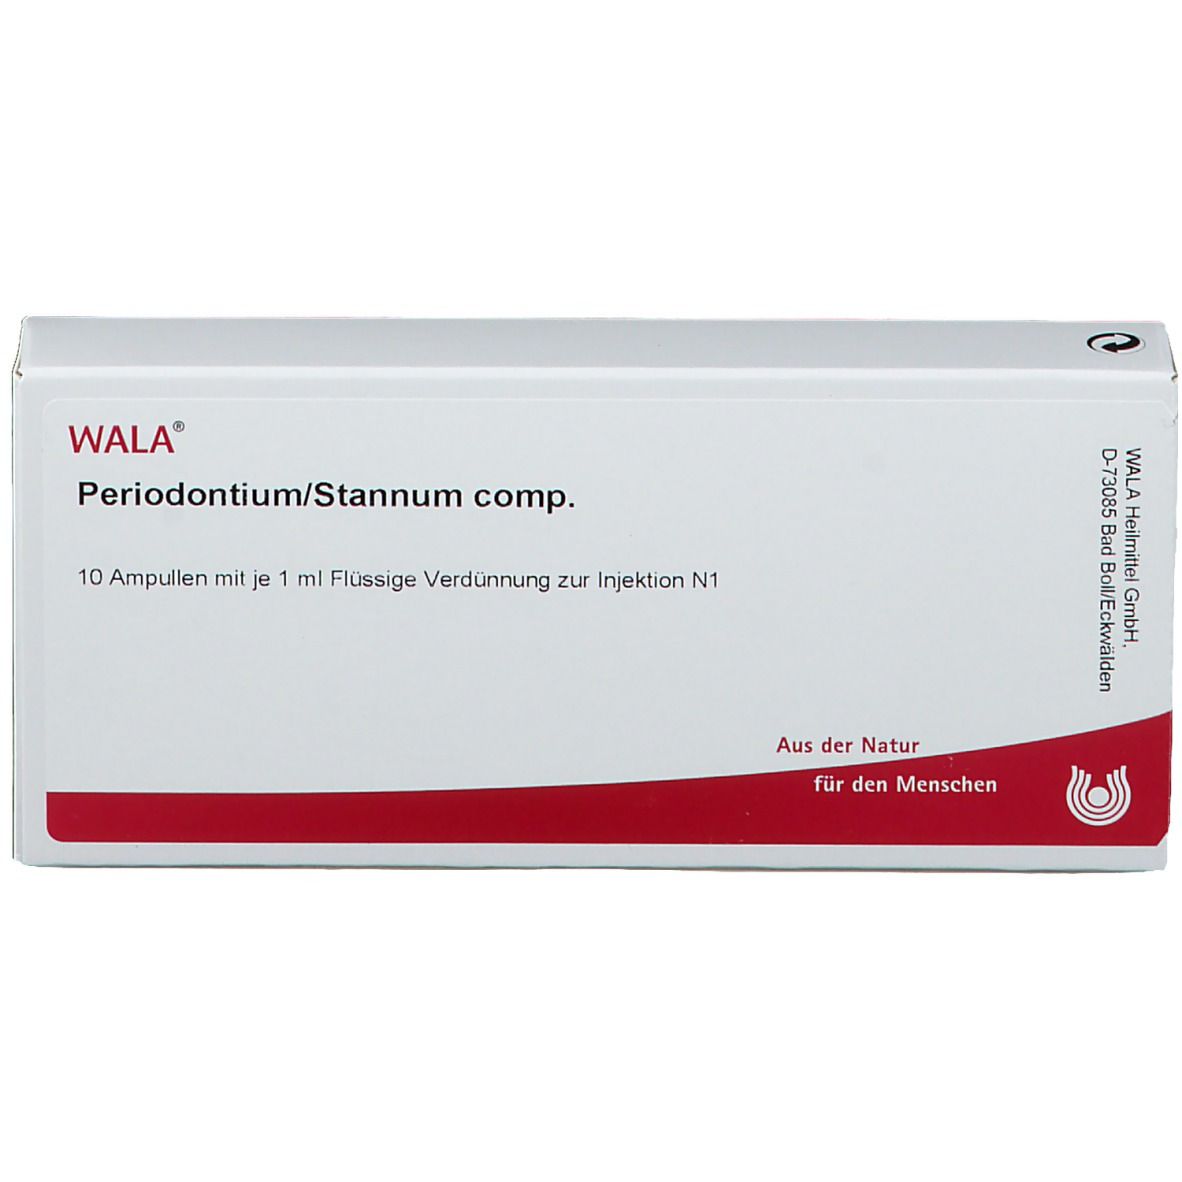 Wala® PERIODONTIUM/ Stannum Comp. Ampullen